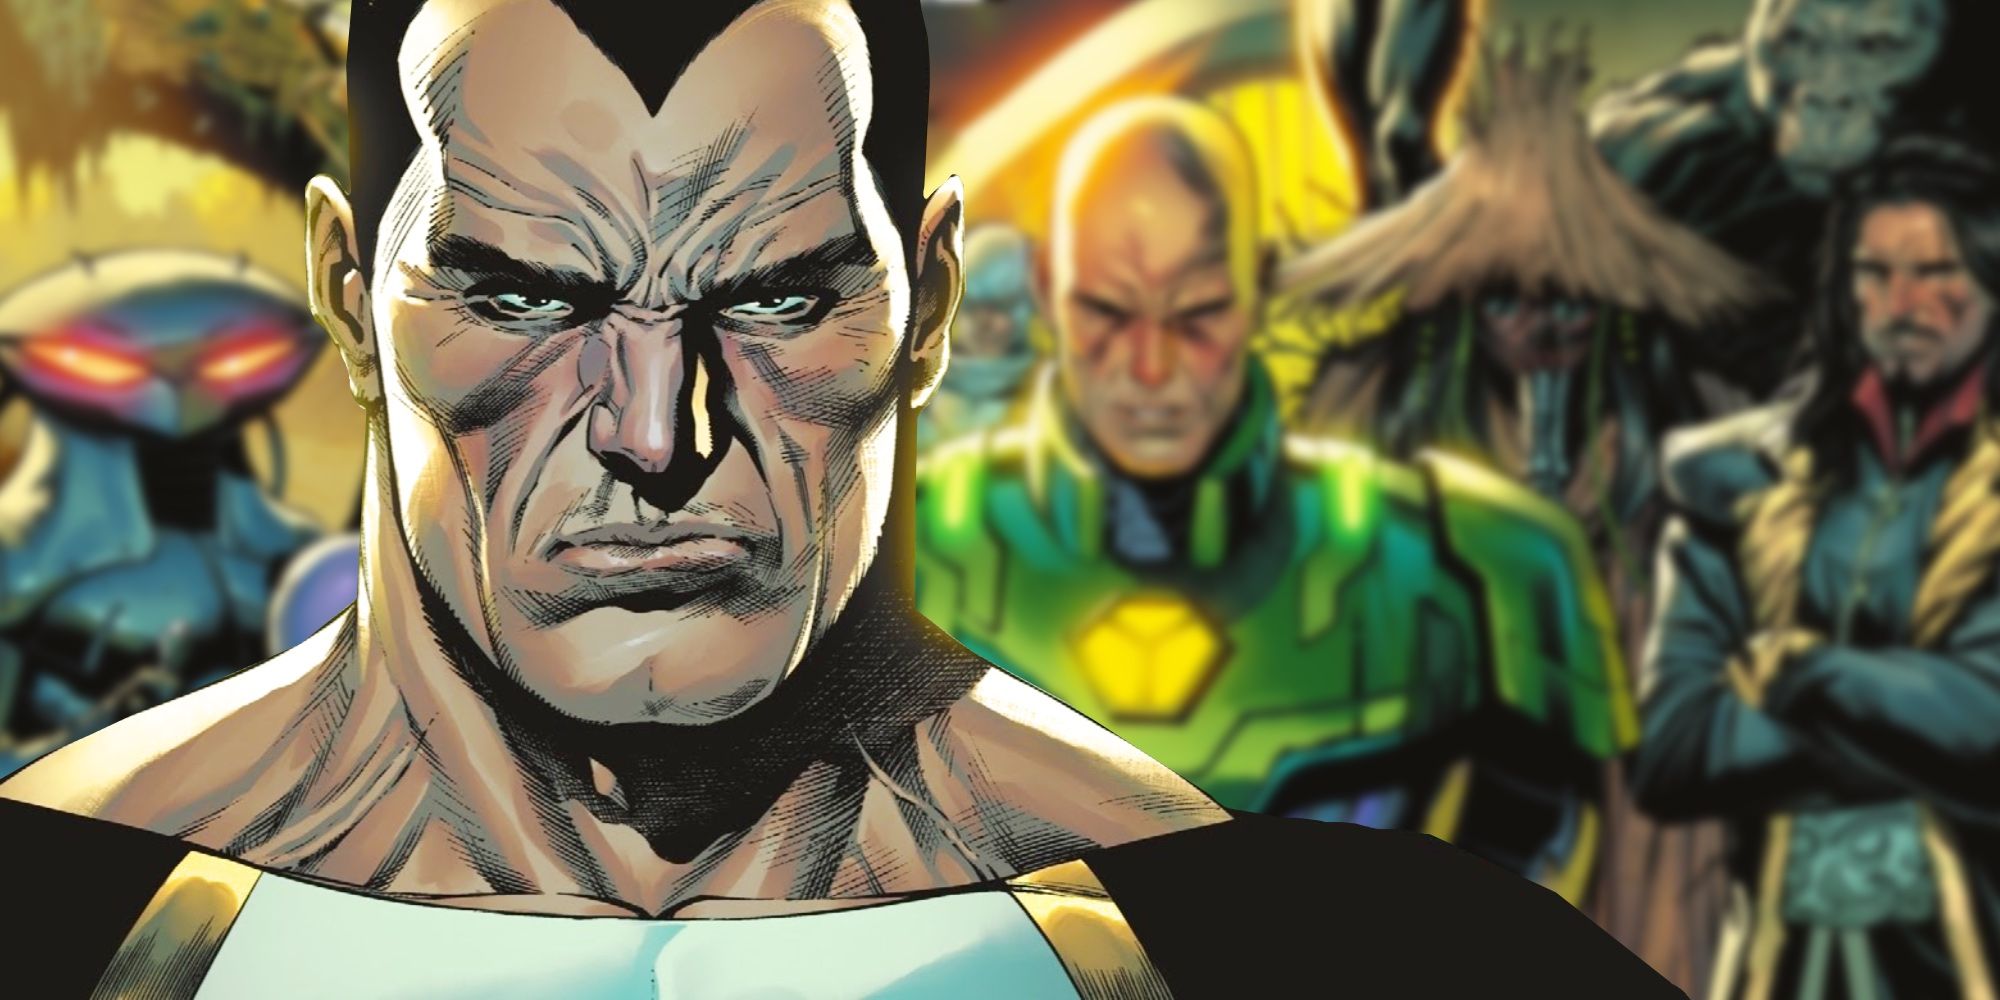 Las 10 historias de origen de supervillanos más débiles en la historia de la Liga de la Justicia